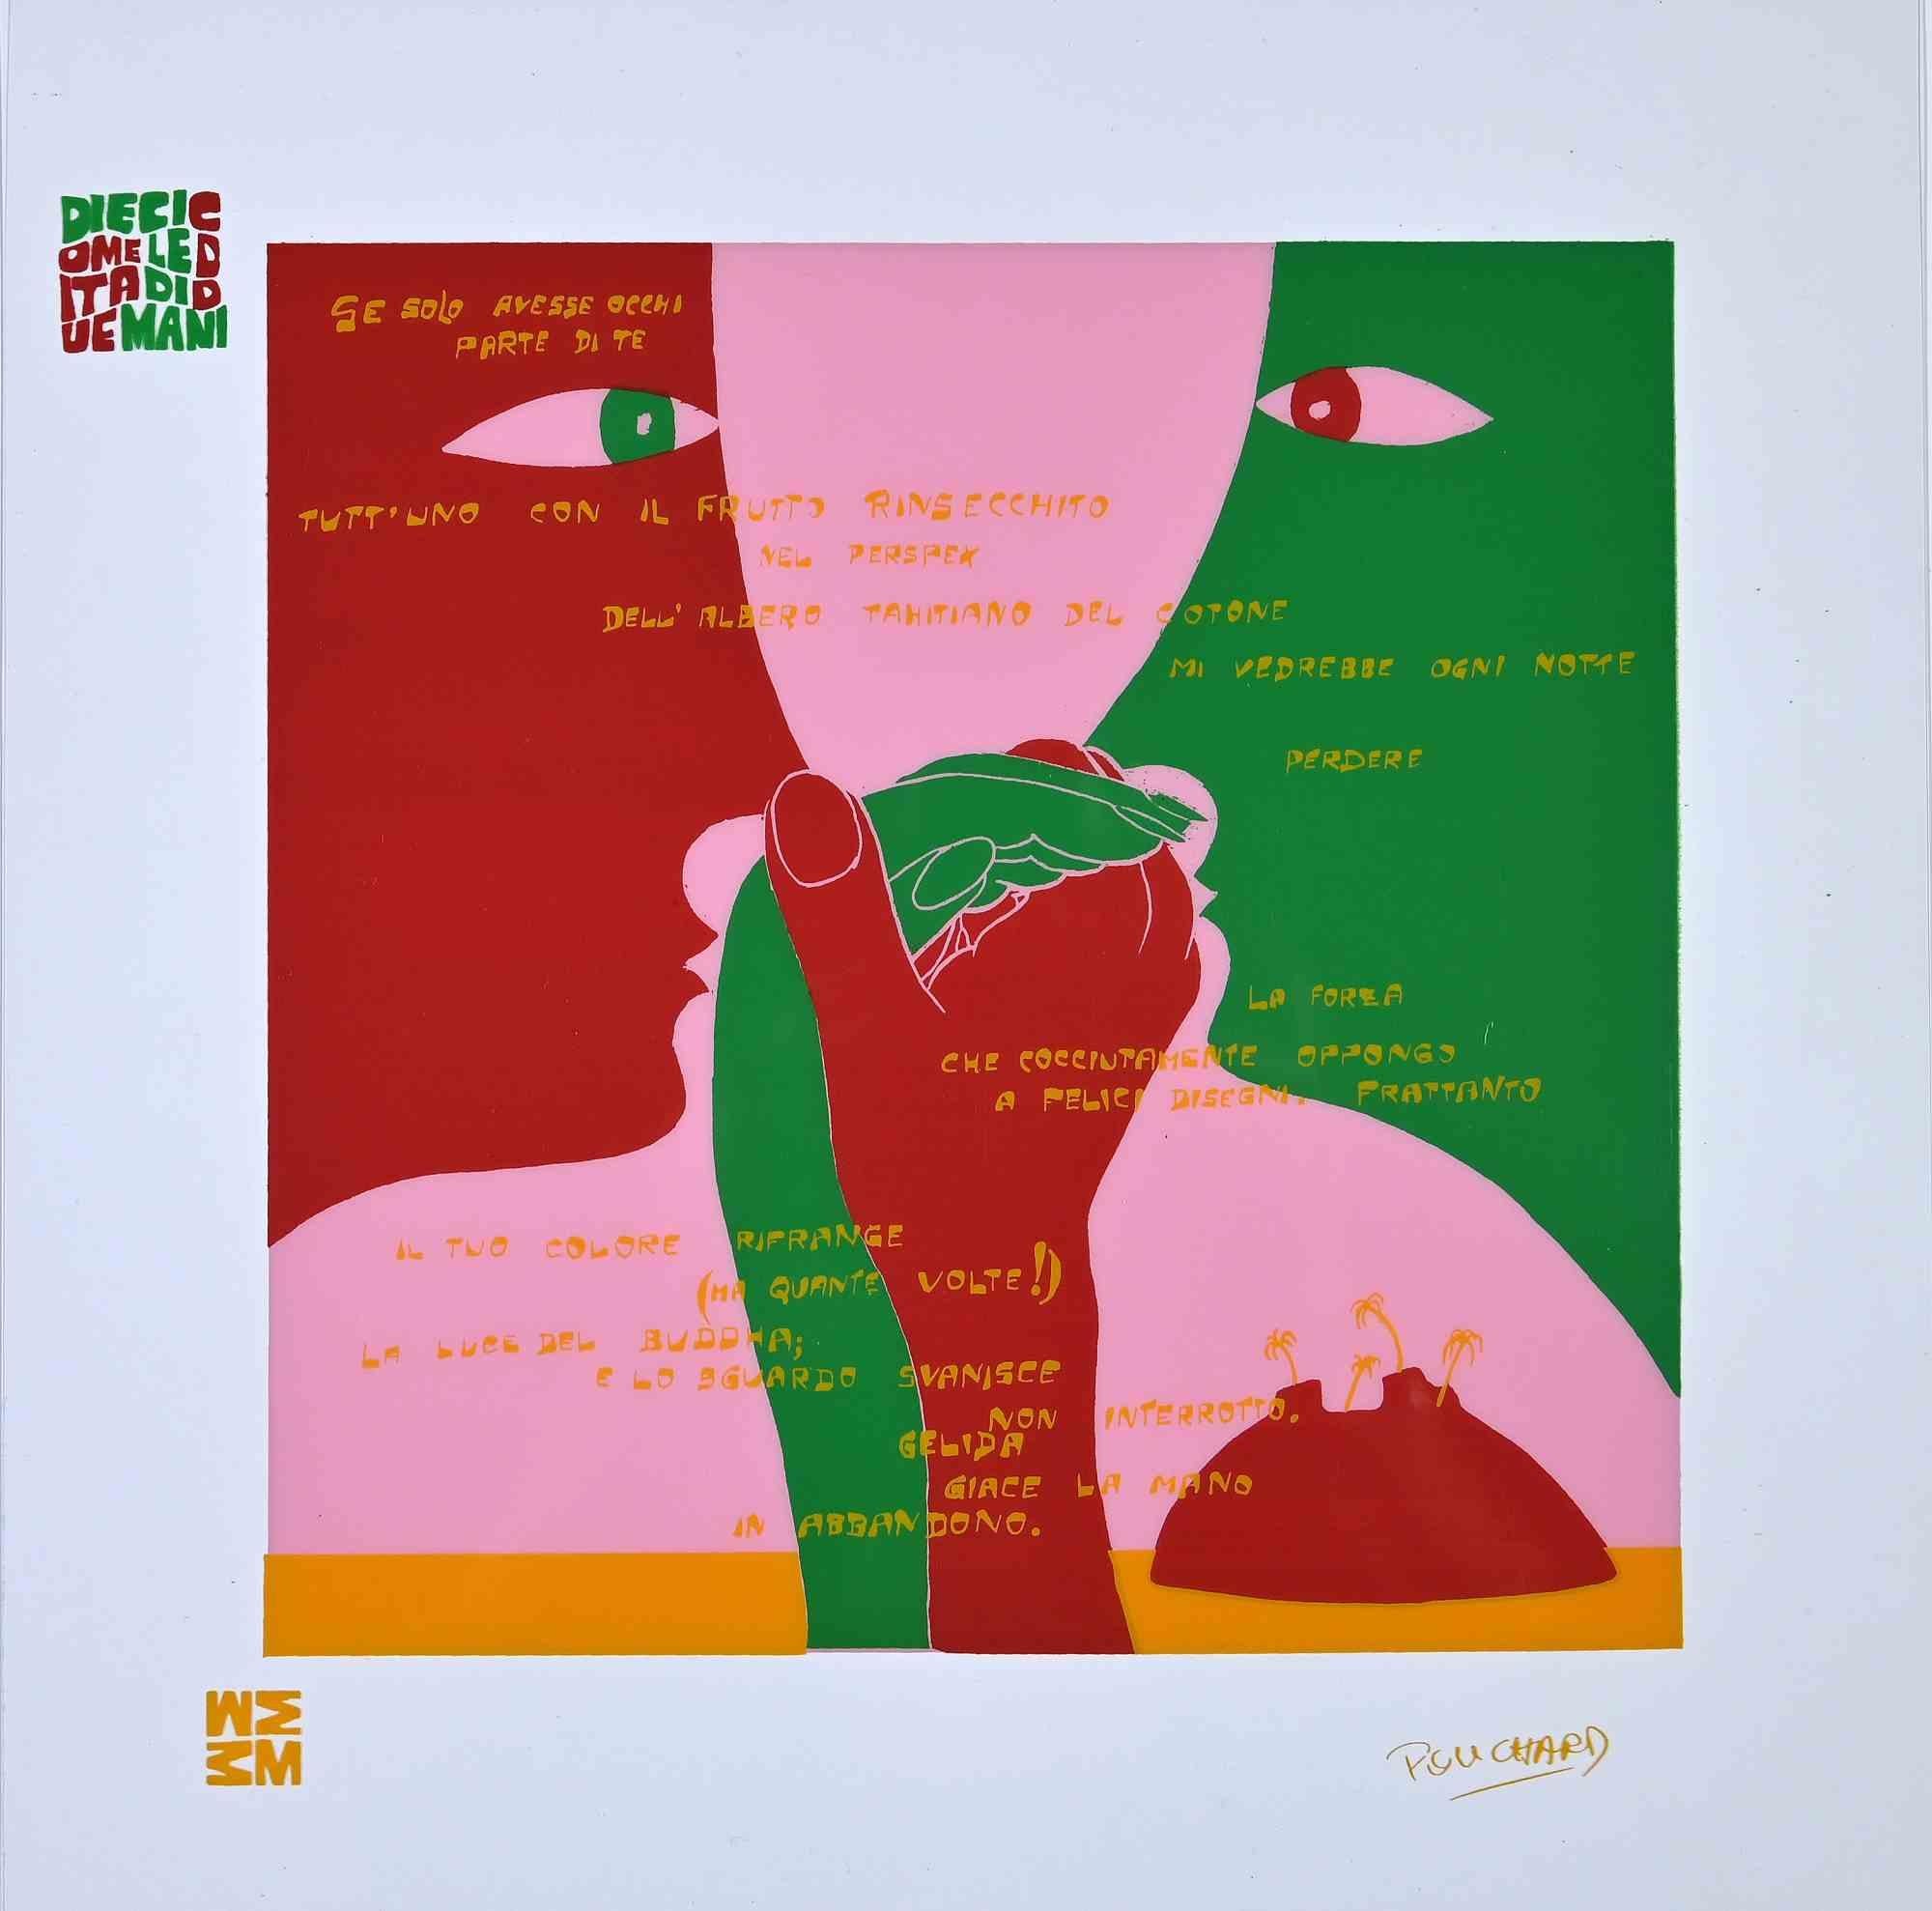 Fluire con te (übersetzt aus dem Italienischen mit "Mit dir fließen") ist ein farbiger Siebdruck auf Acetat, der 1973 von dem Künstler Ennio Pouchard realisiert wurde.

Signiert auf der Platte unten rechts und handsigniert und handnummeriert auf der